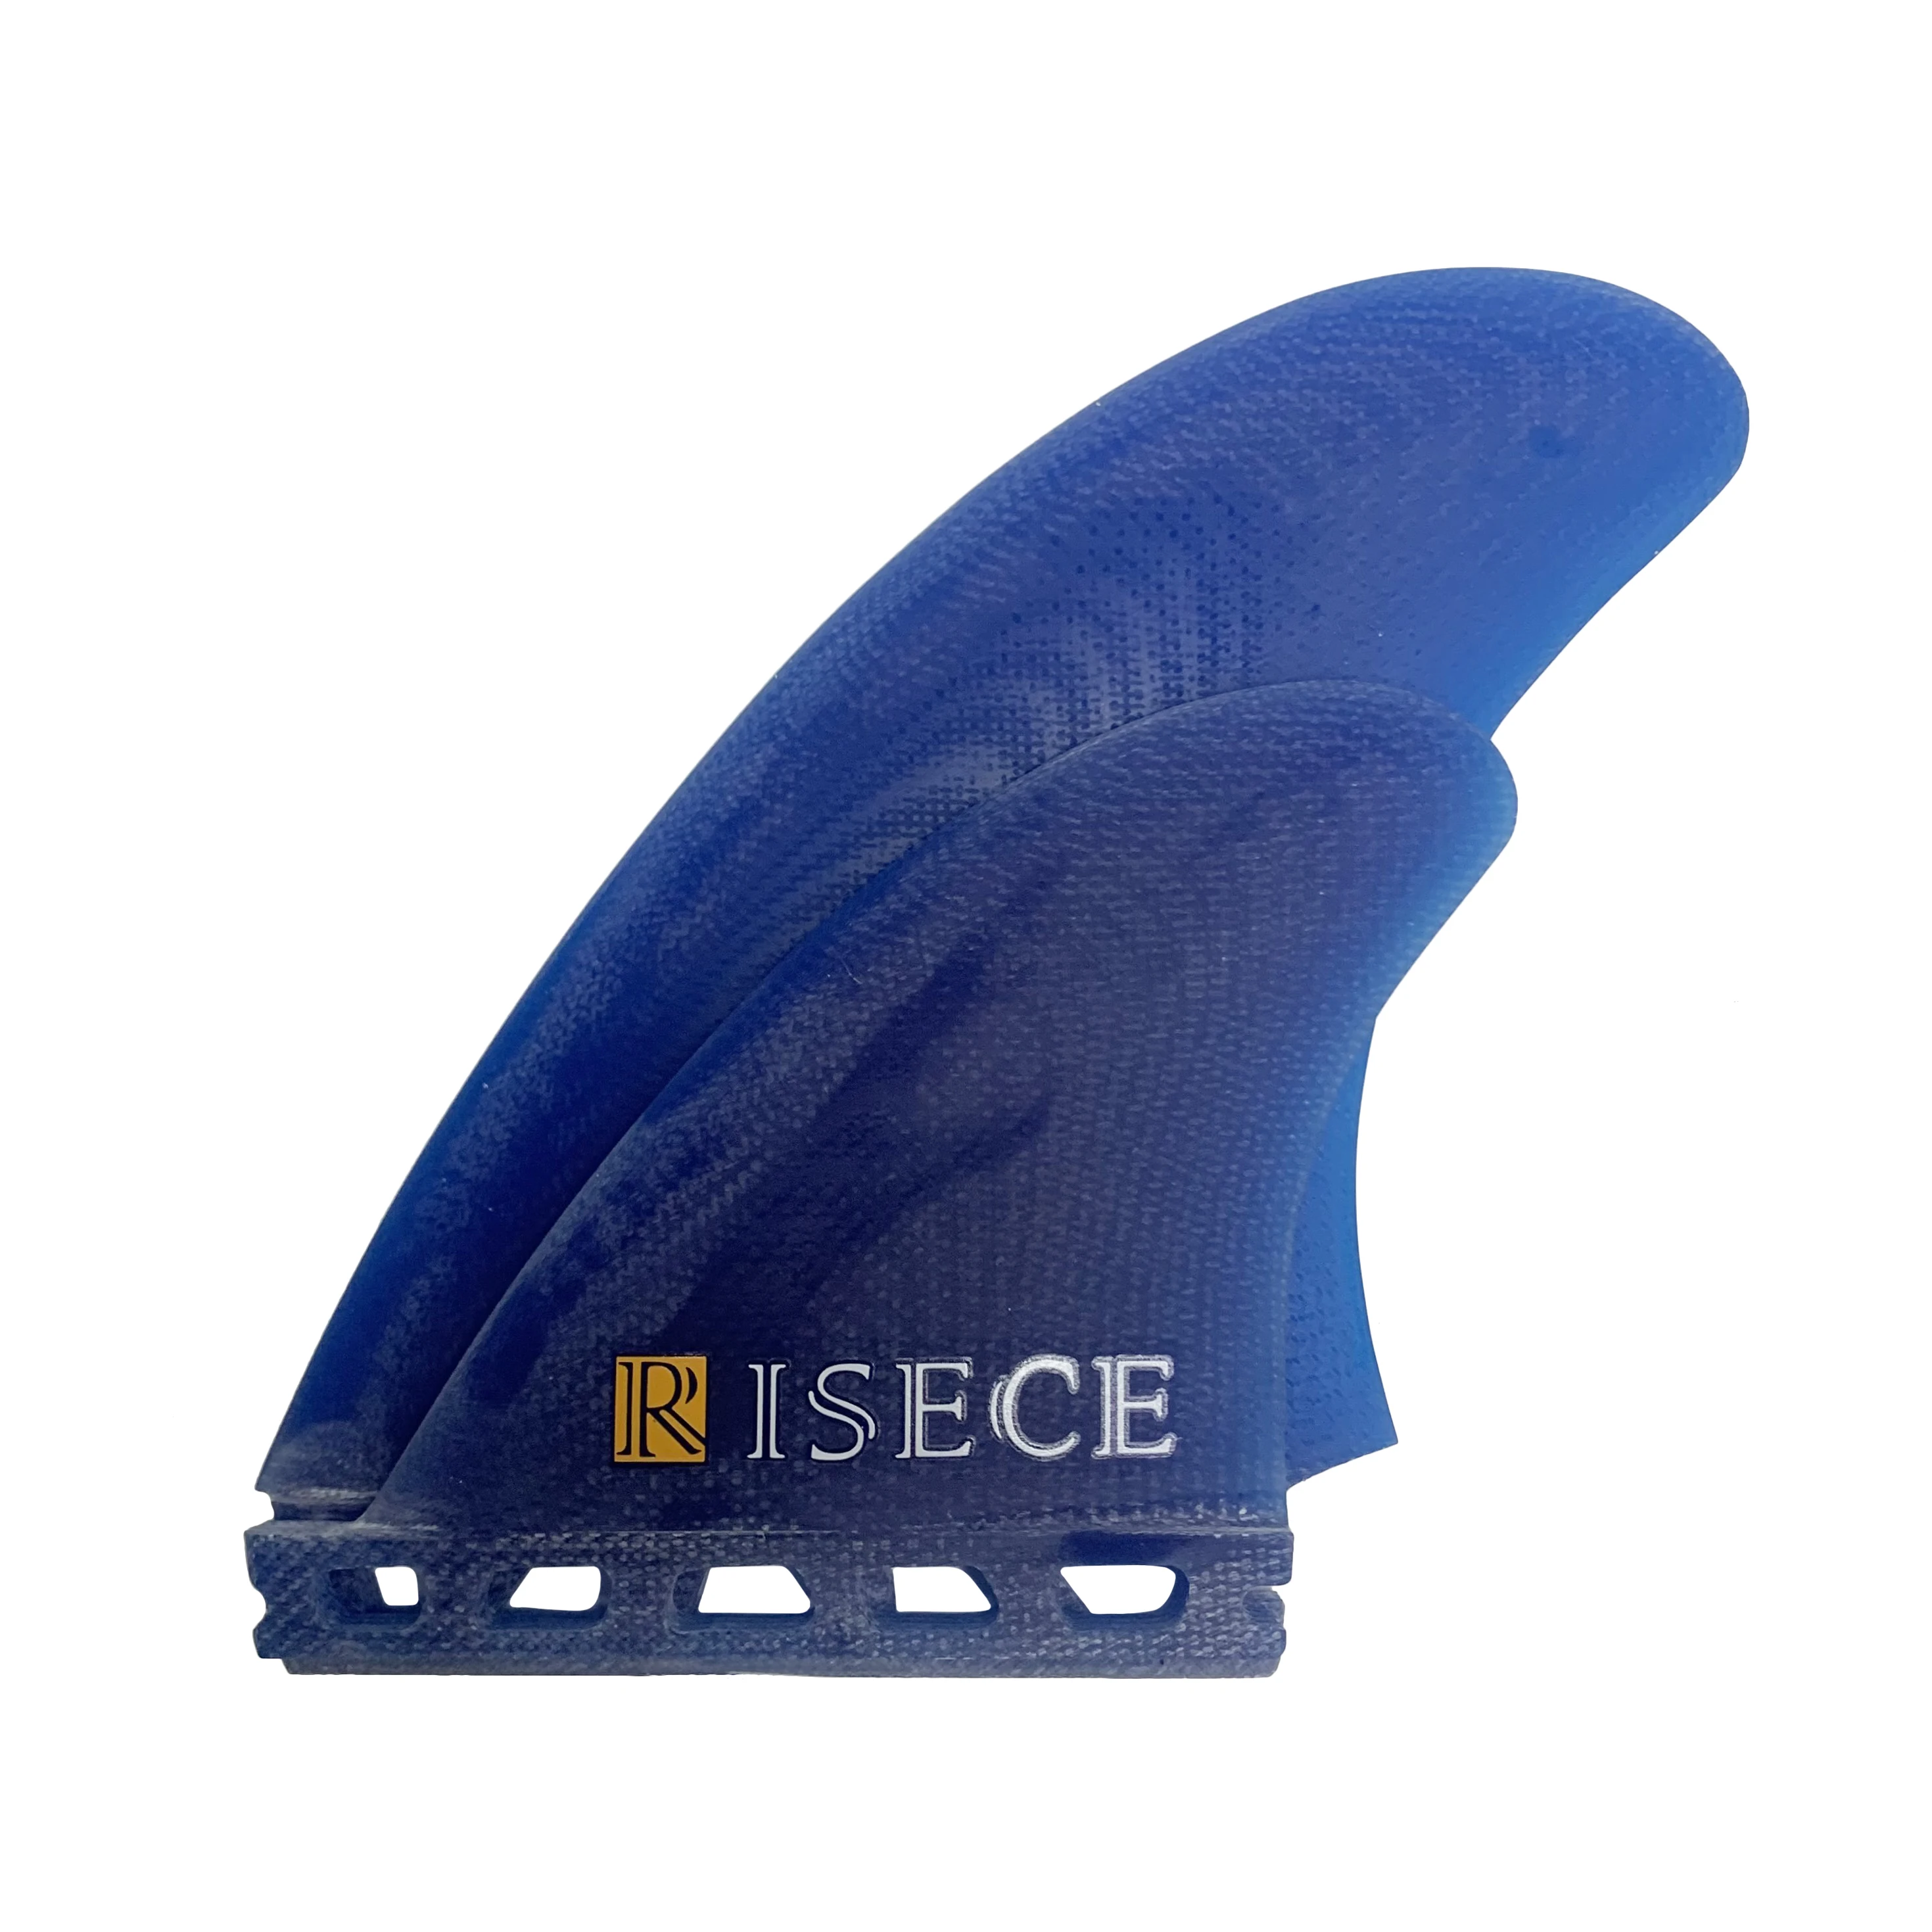 RISECE FCS 2 Четырехлопастные Плавники для доски для серфинга из Стекловолокна GFK Fiberglass Quad Surfboard Fin Single Tab Синие Плавники Из Стекловолокна 4 Штуки Quad Set Изображение 2 